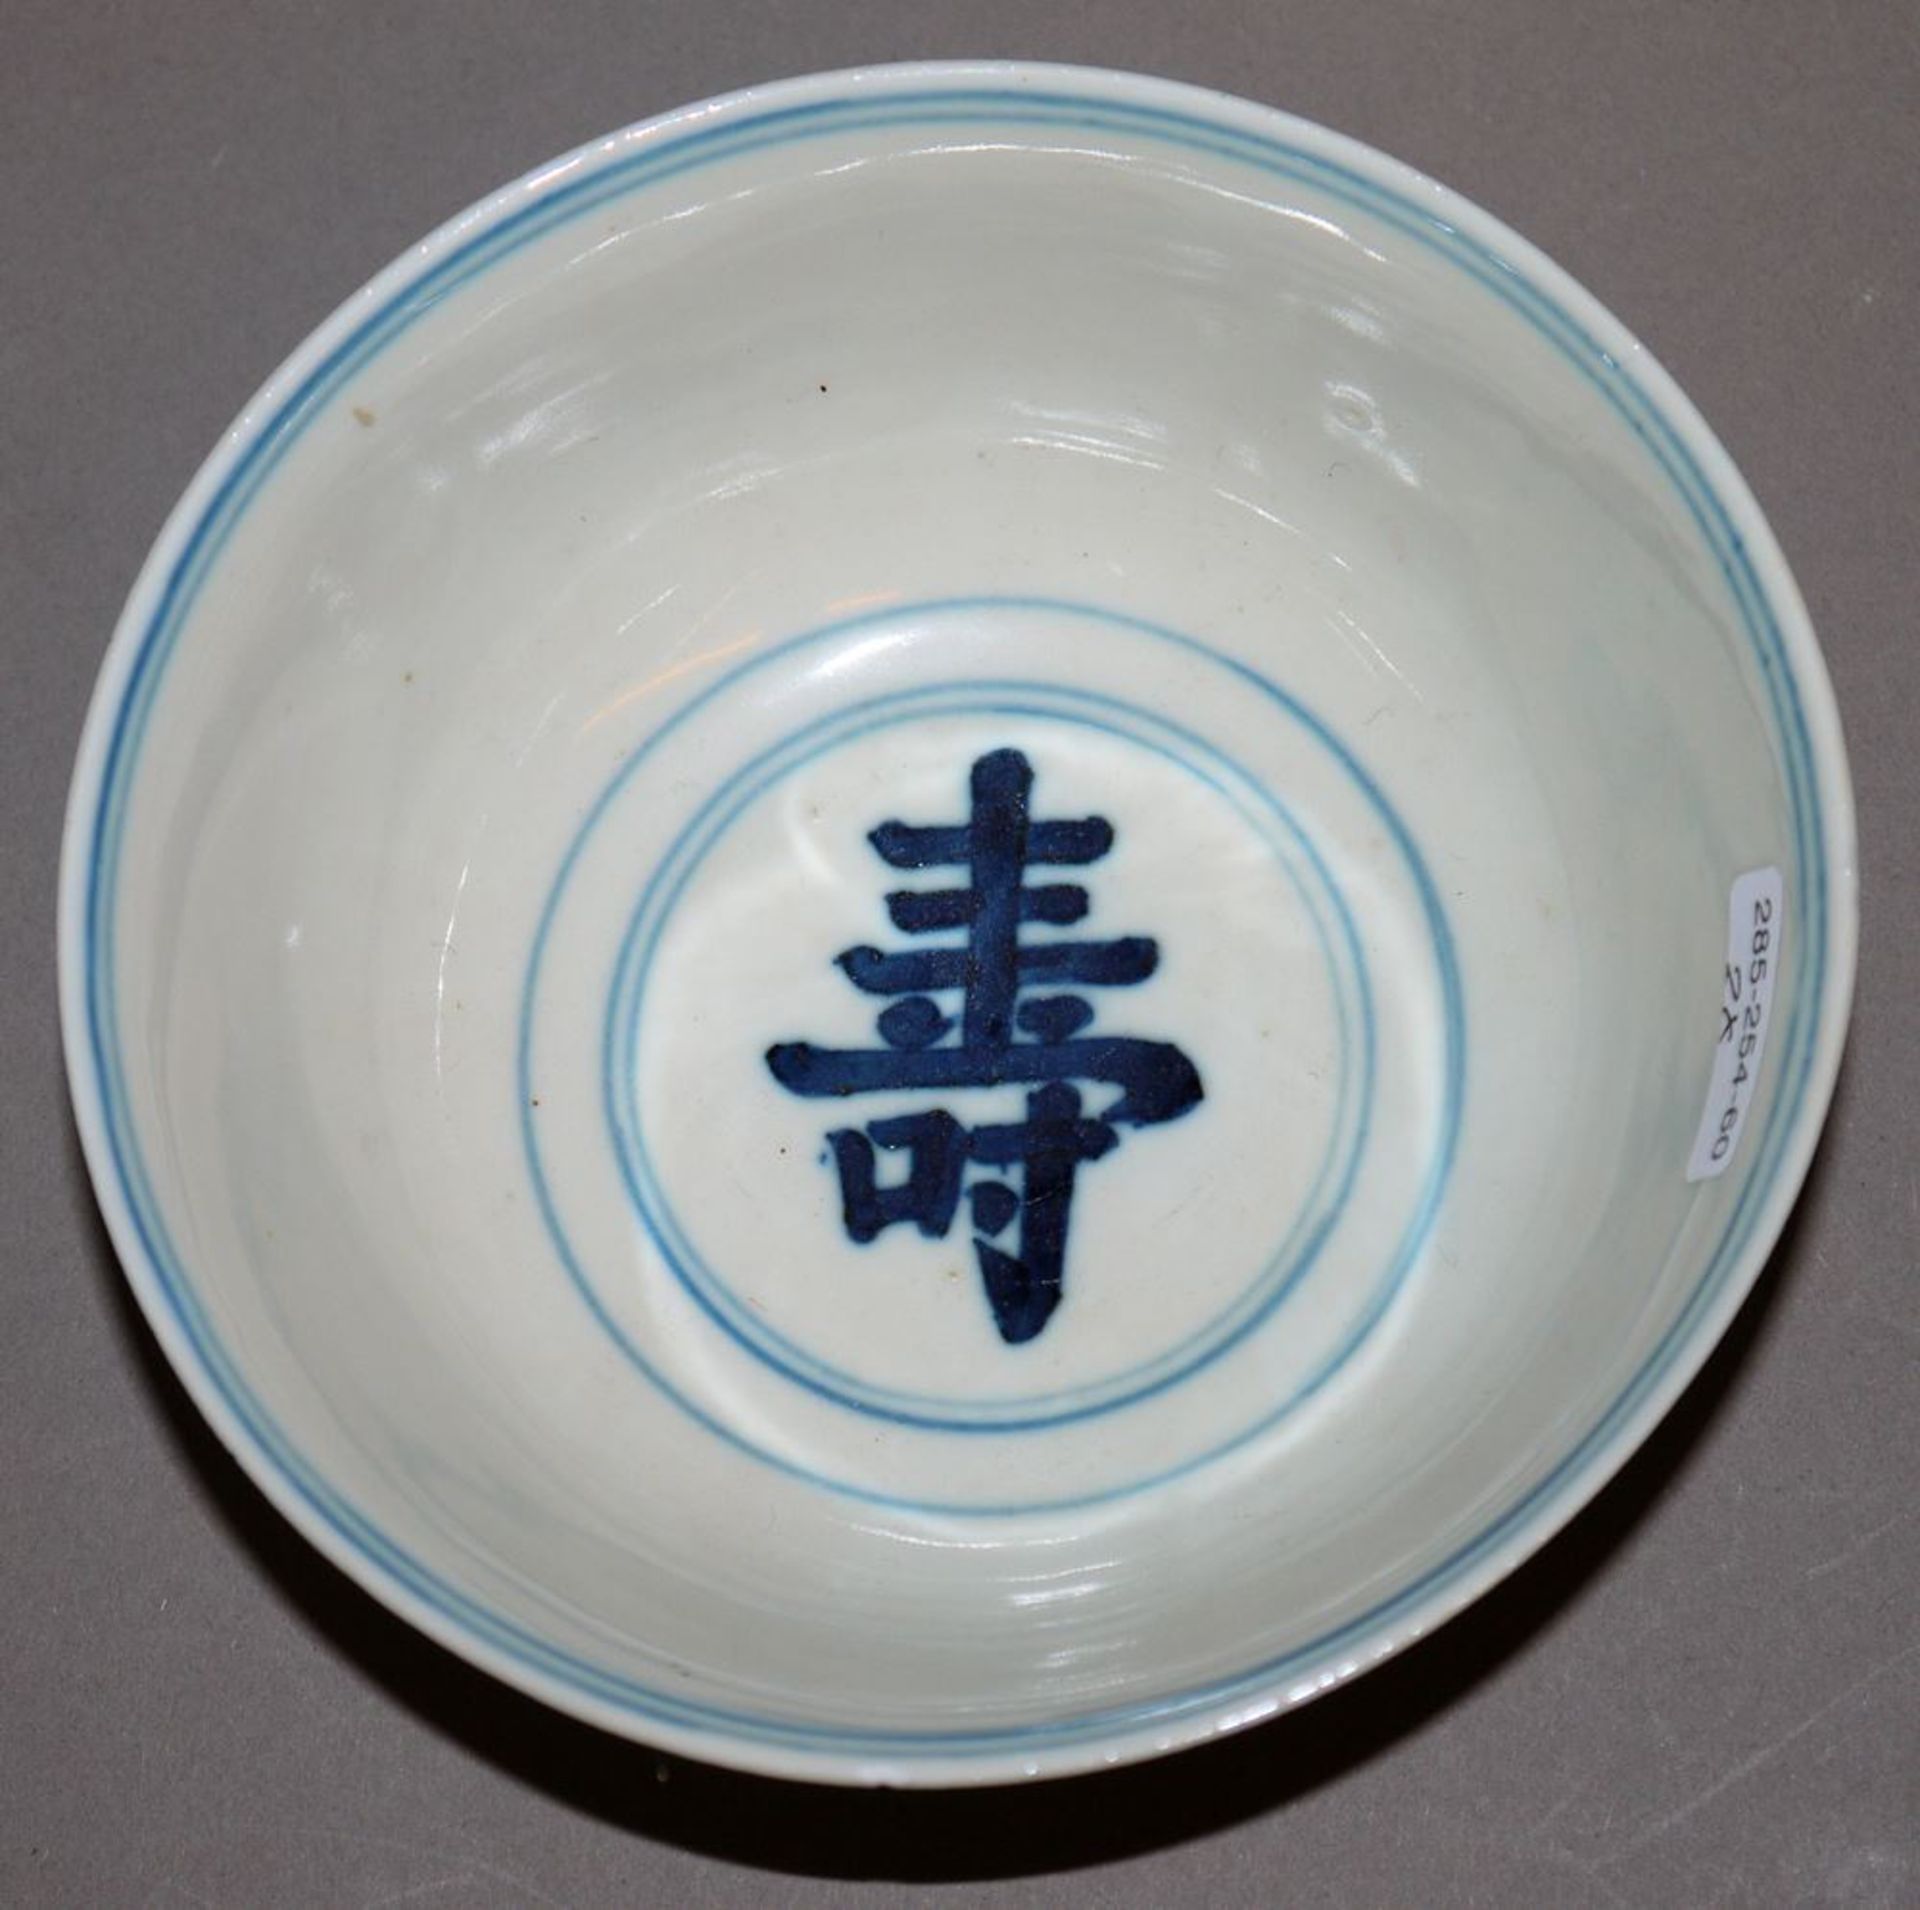 Speiseschale und Teller in Blauweiß-Porzellan, China 19. Jh. - Bild 5 aus 5